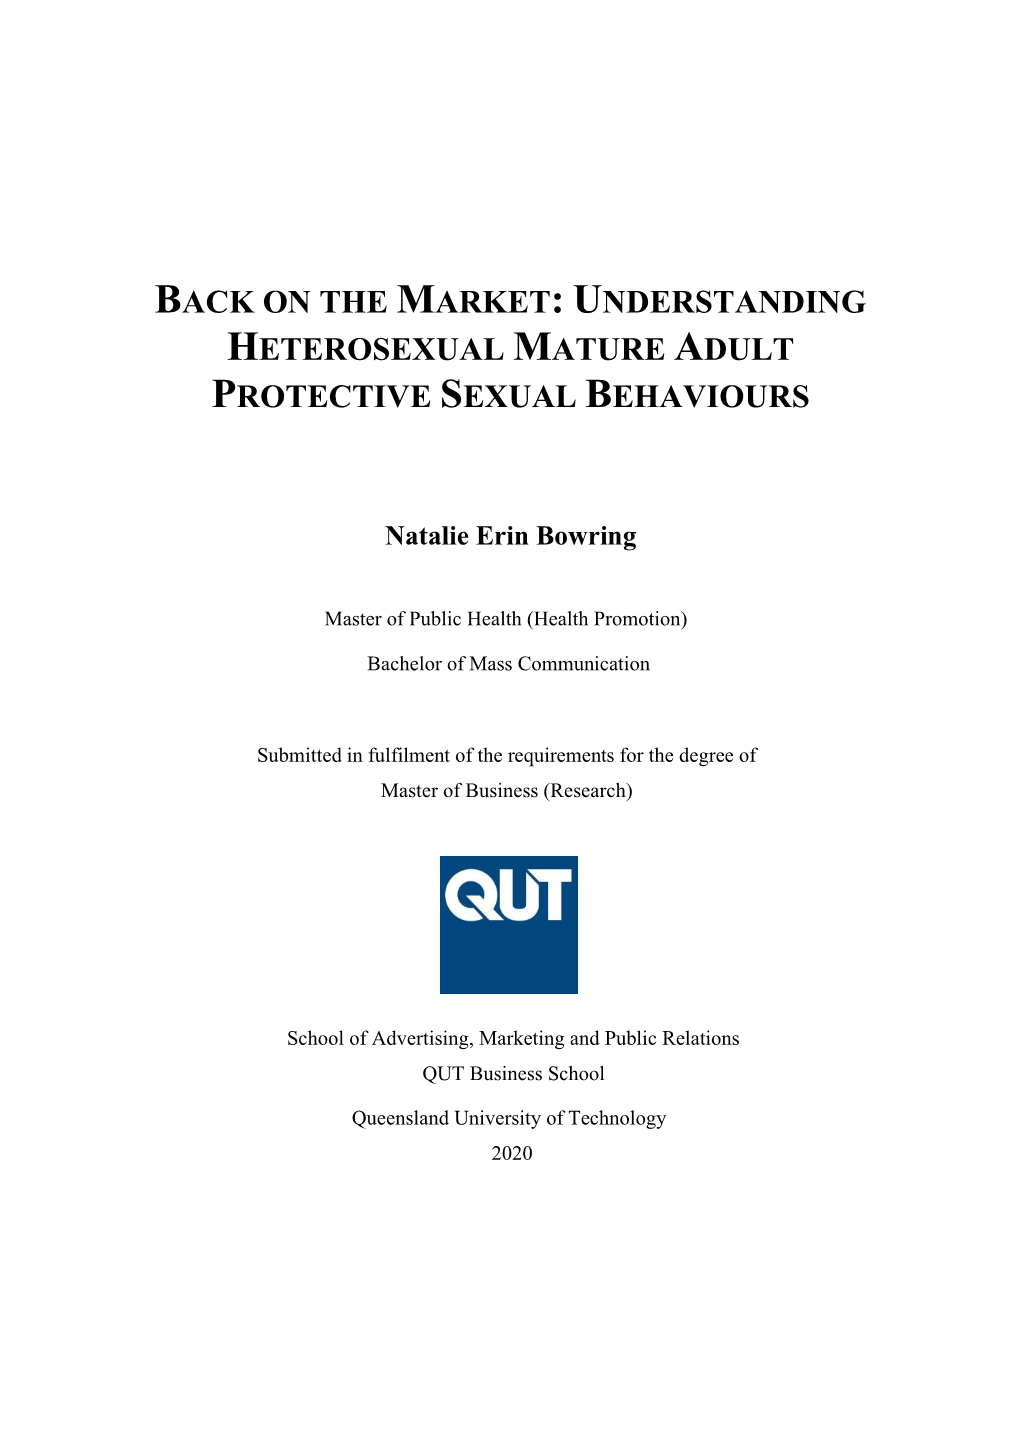 Understanding Heterosexual Mature Adult Protective Sexual Behaviours